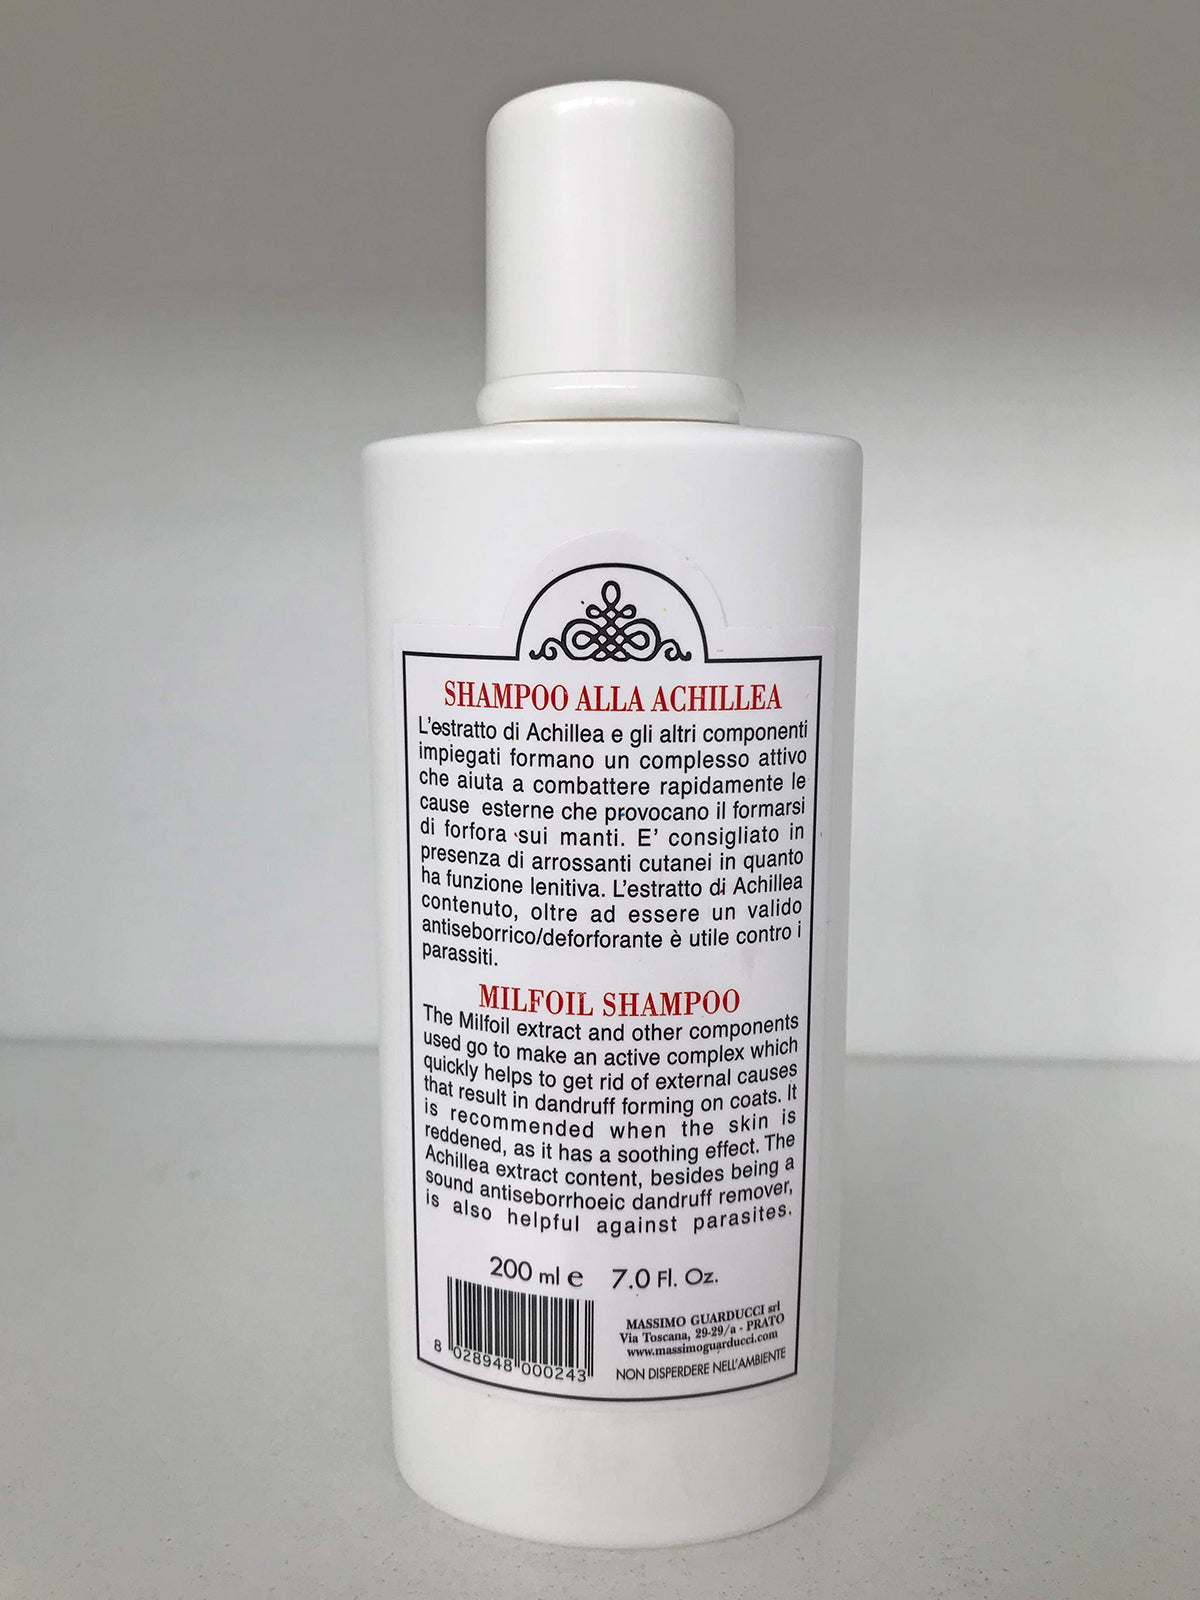 Shampoo alla Achillea "Linea manti impuri con forfora"